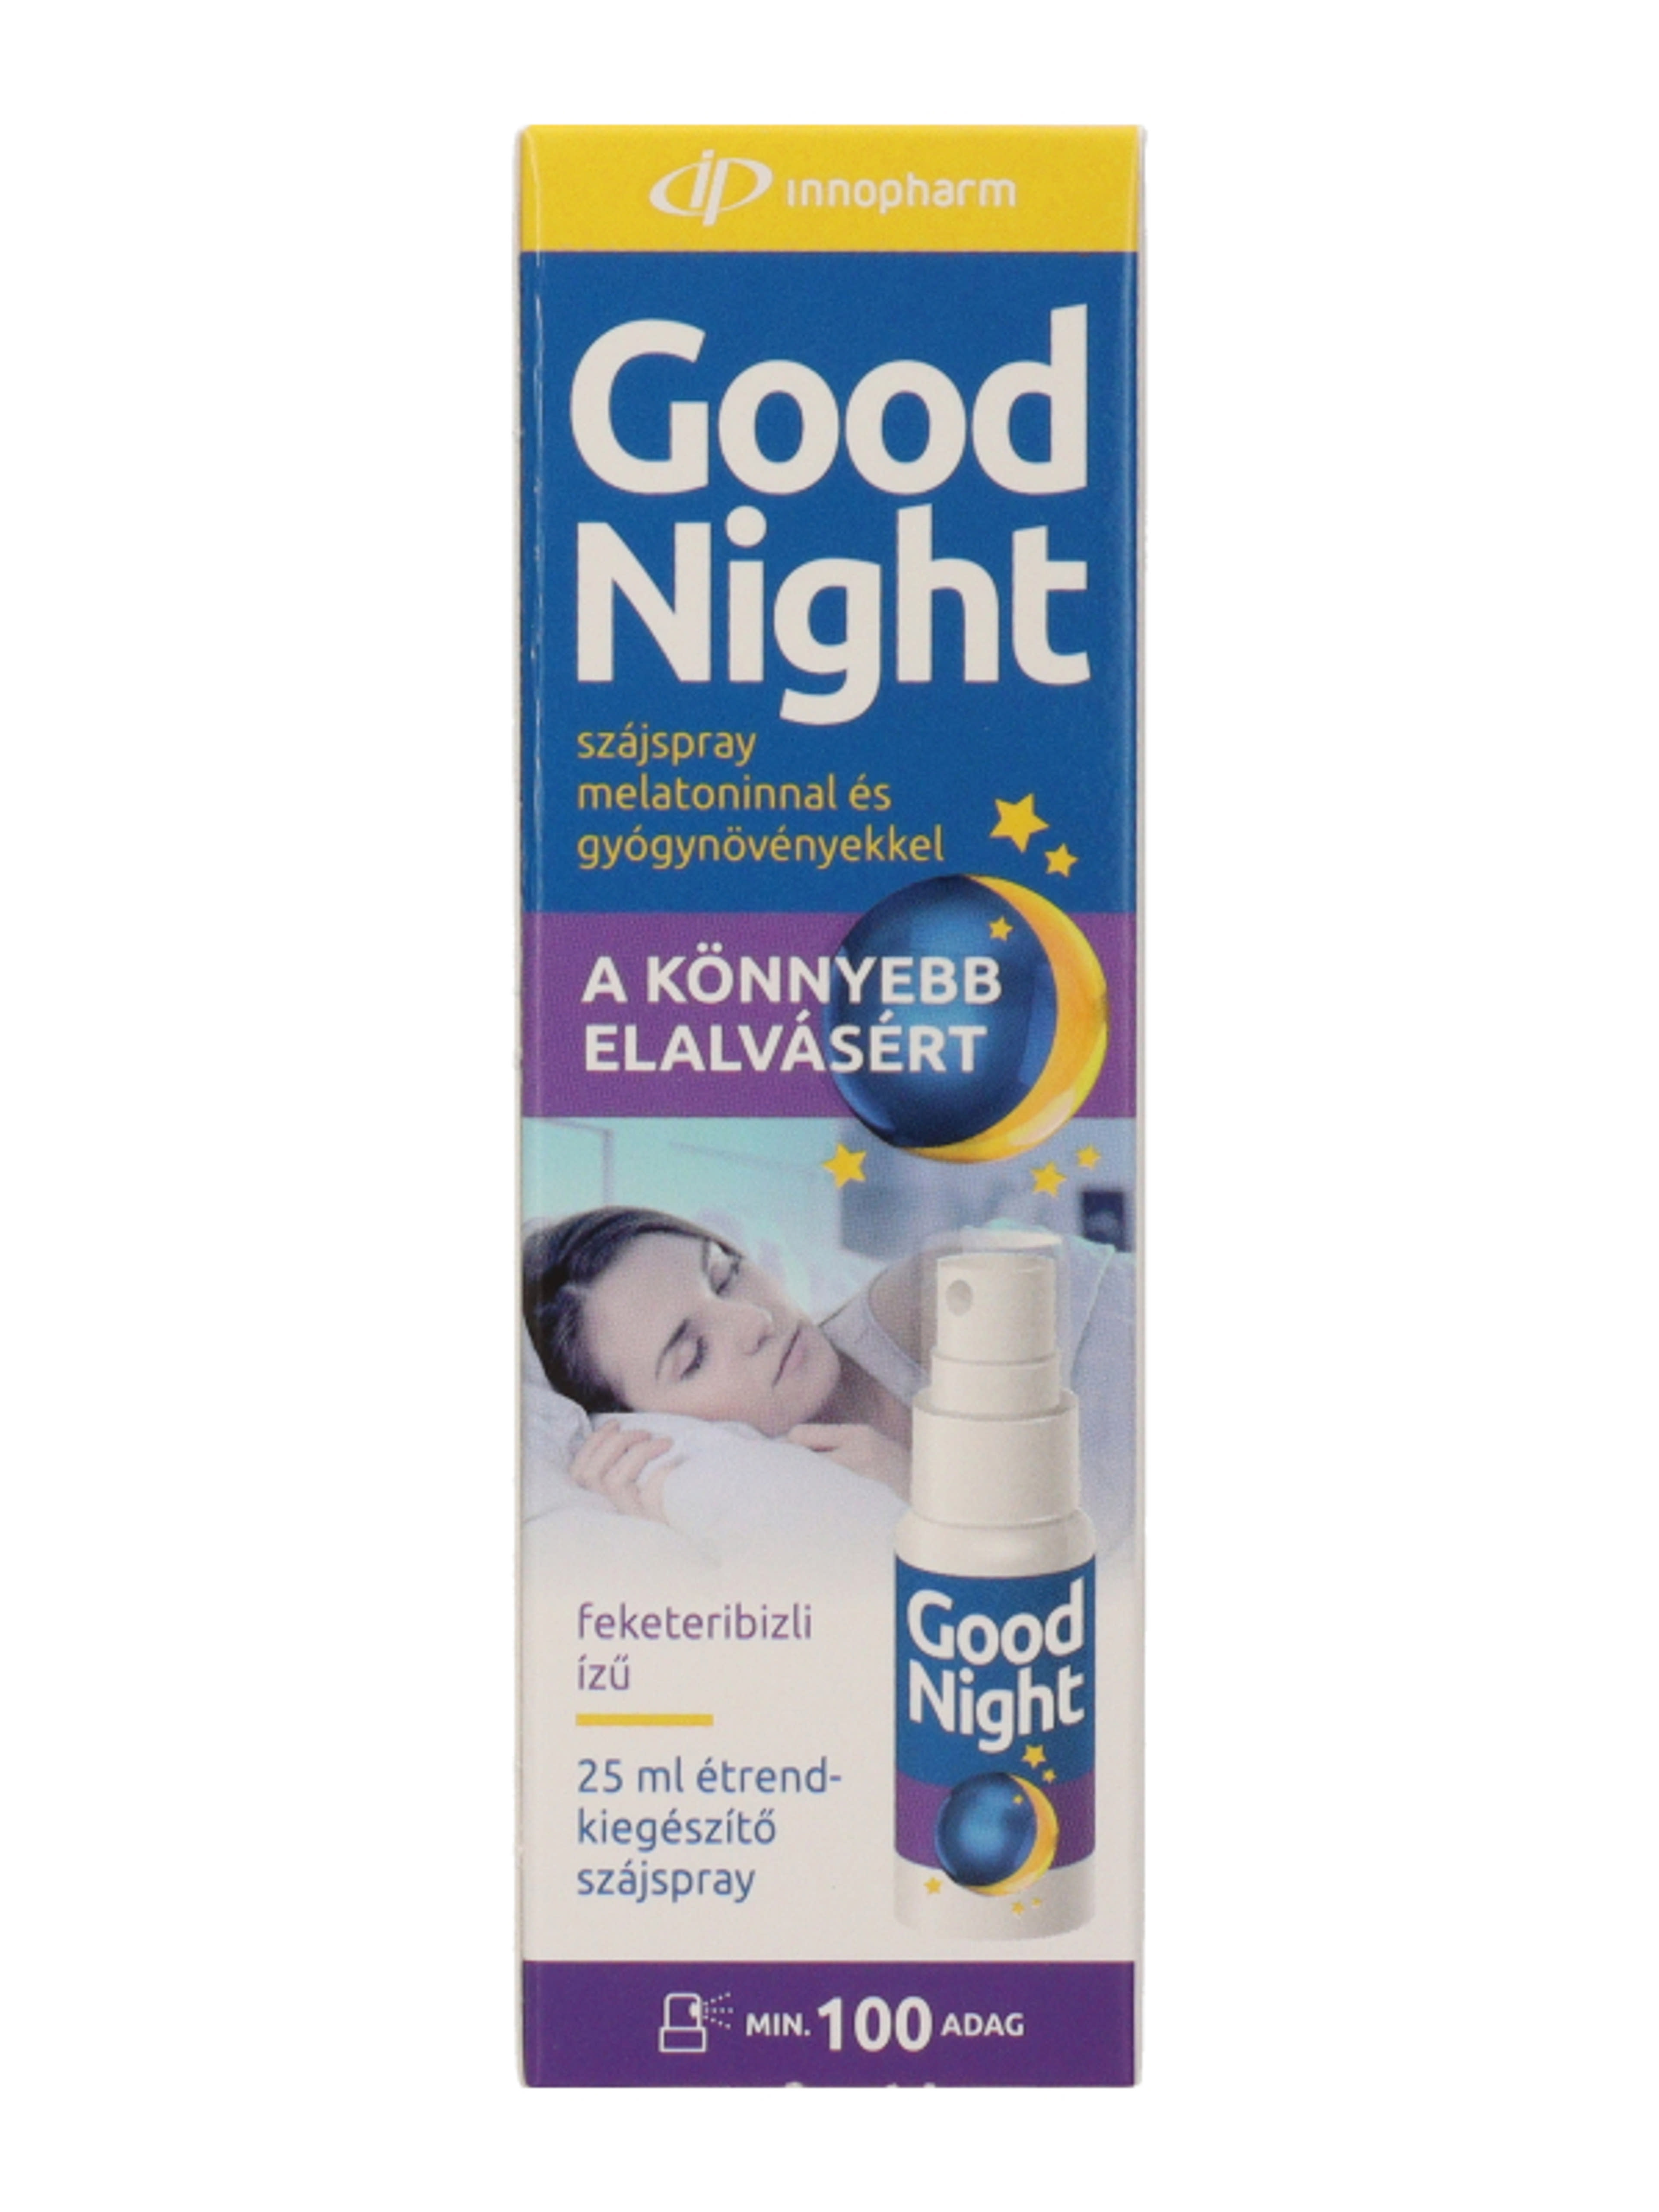 Innopharm Good Night étrend-kiegészítő szájspray melatoninnal és gyógynövényekkel feketeribizli ízű - 25 ml-2